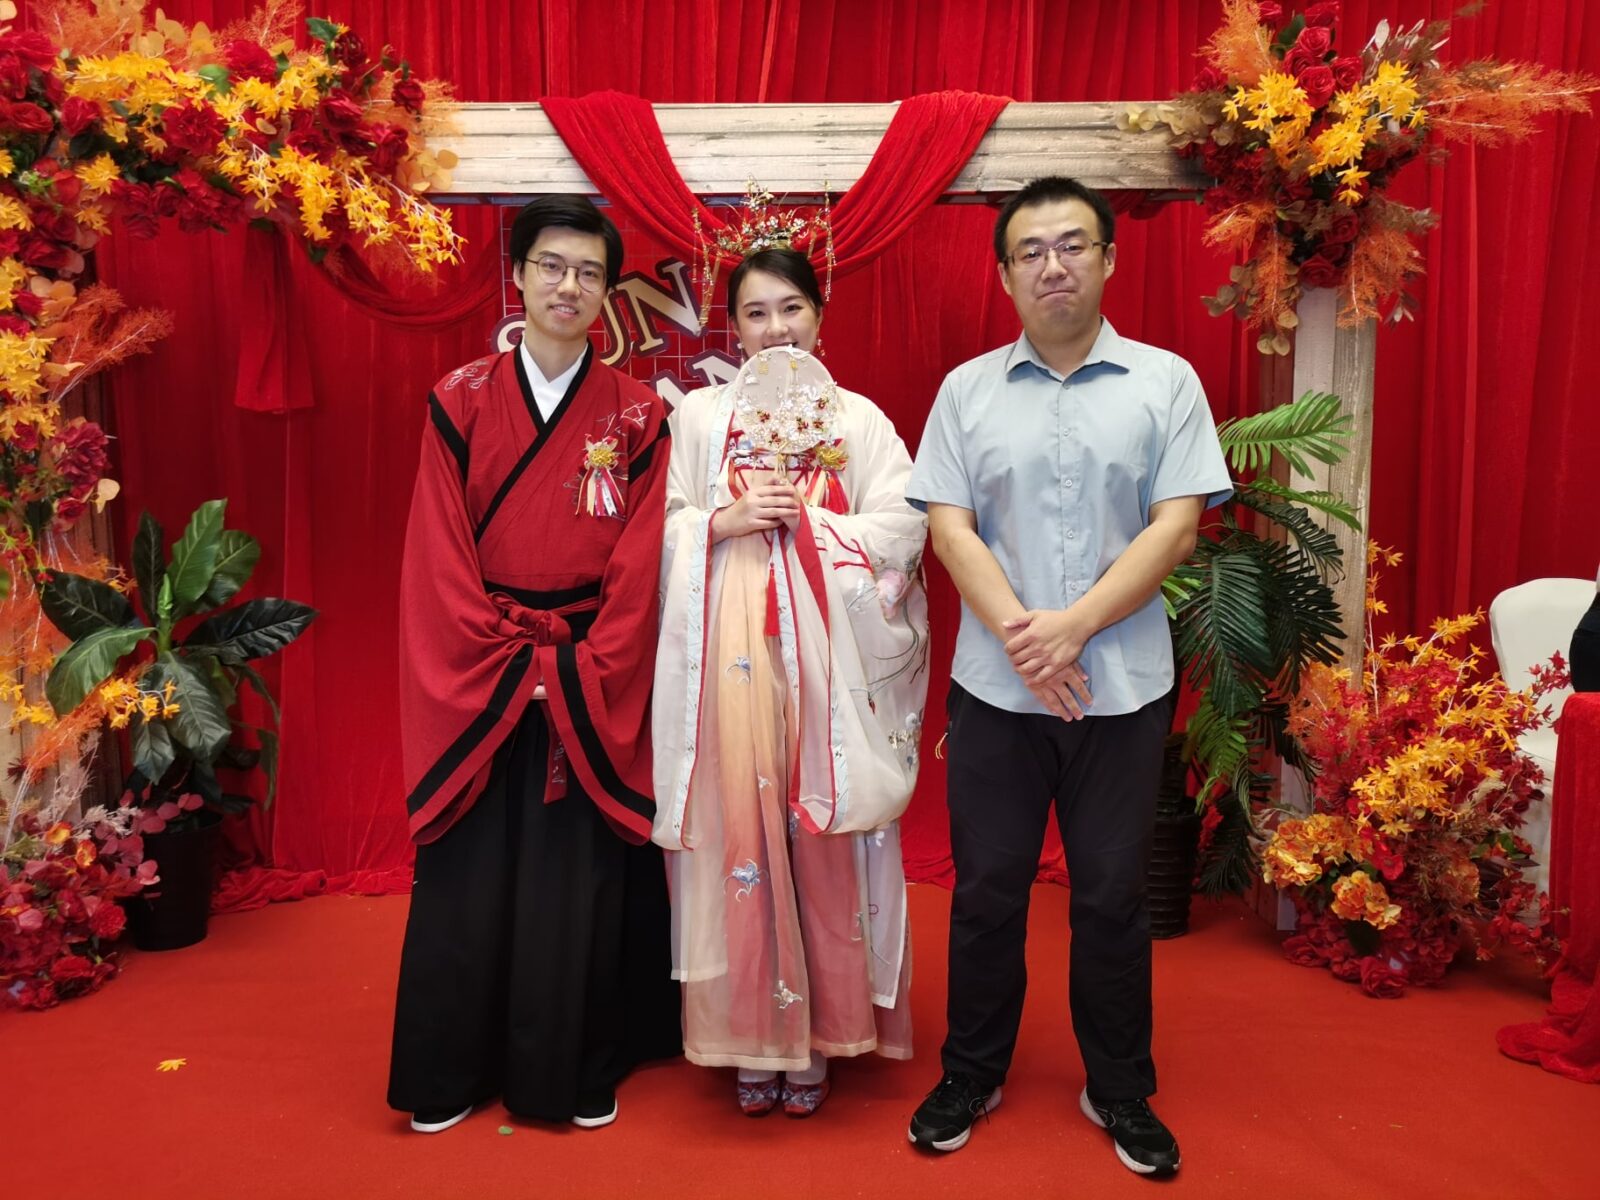 Matrimonio cinese : dalle origini fino ad oggi